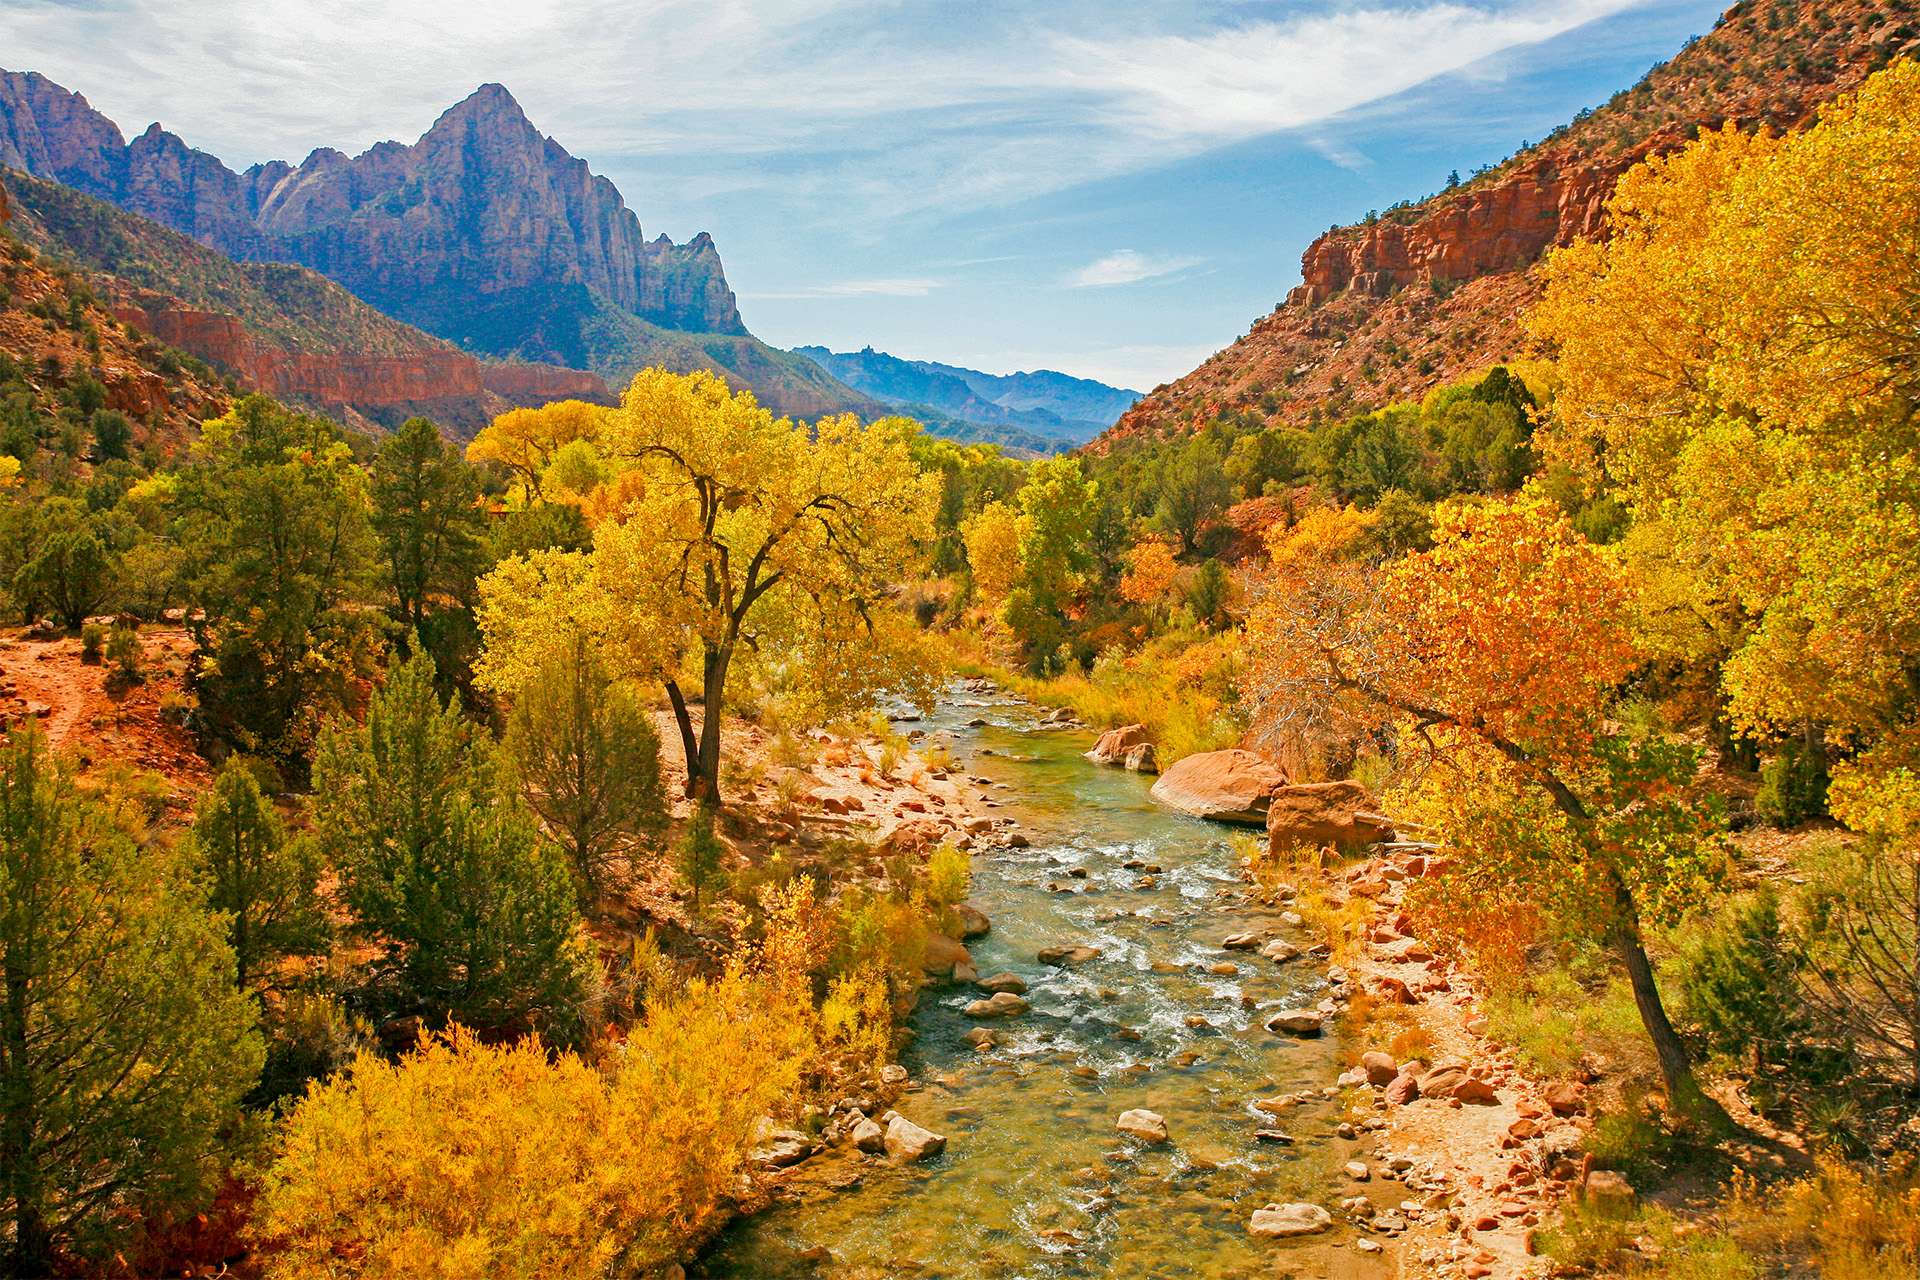 El río Virgin en el Parque Nacional Zion durante la temporada de otoño.  Los árboles que muestran los colores del otoño bordean el río.